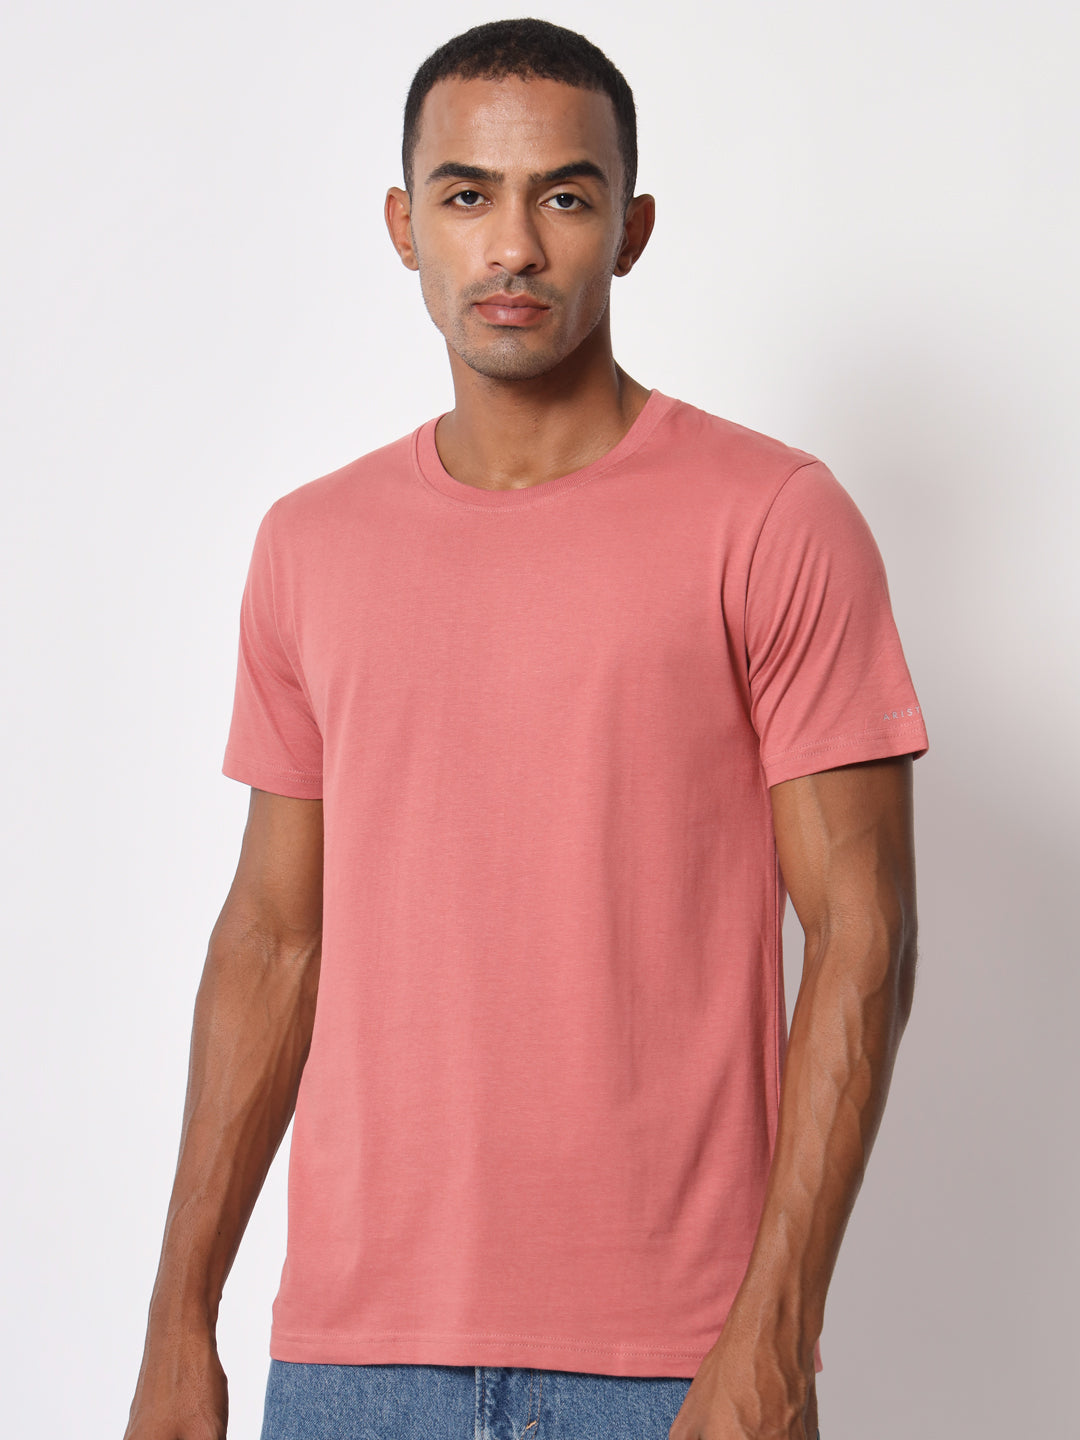 Men's Solid Round Neck Half Sleeve Mauve Cotton T-shirt